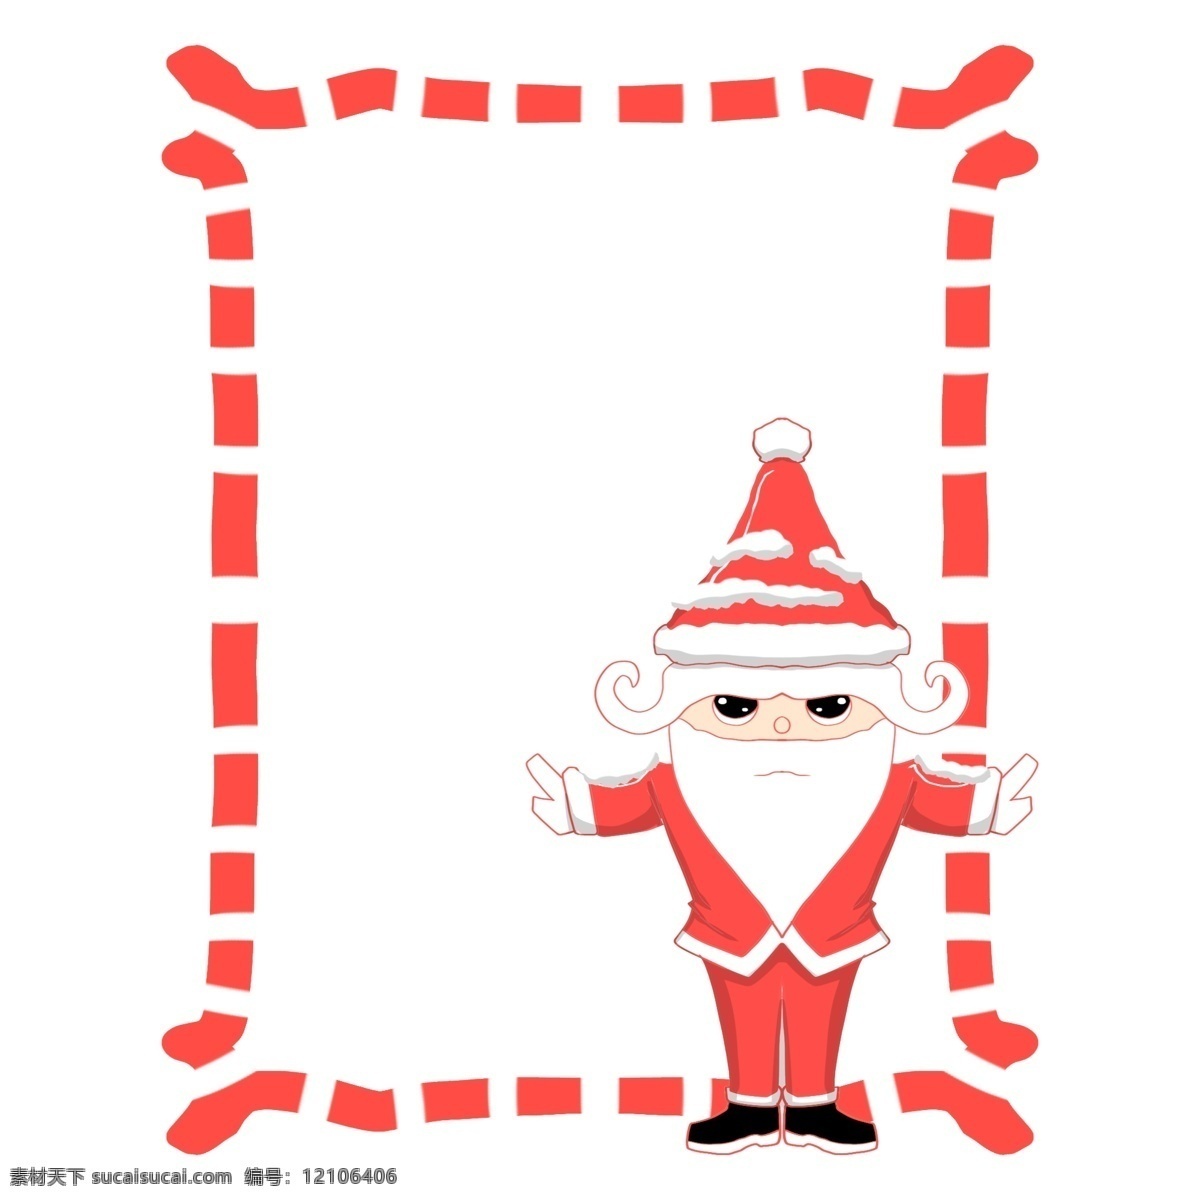 手绘 圣诞老人 边框 圣诞边框 圣诞节 红色 红色边框 边框插画 手绘边框 插画 插图